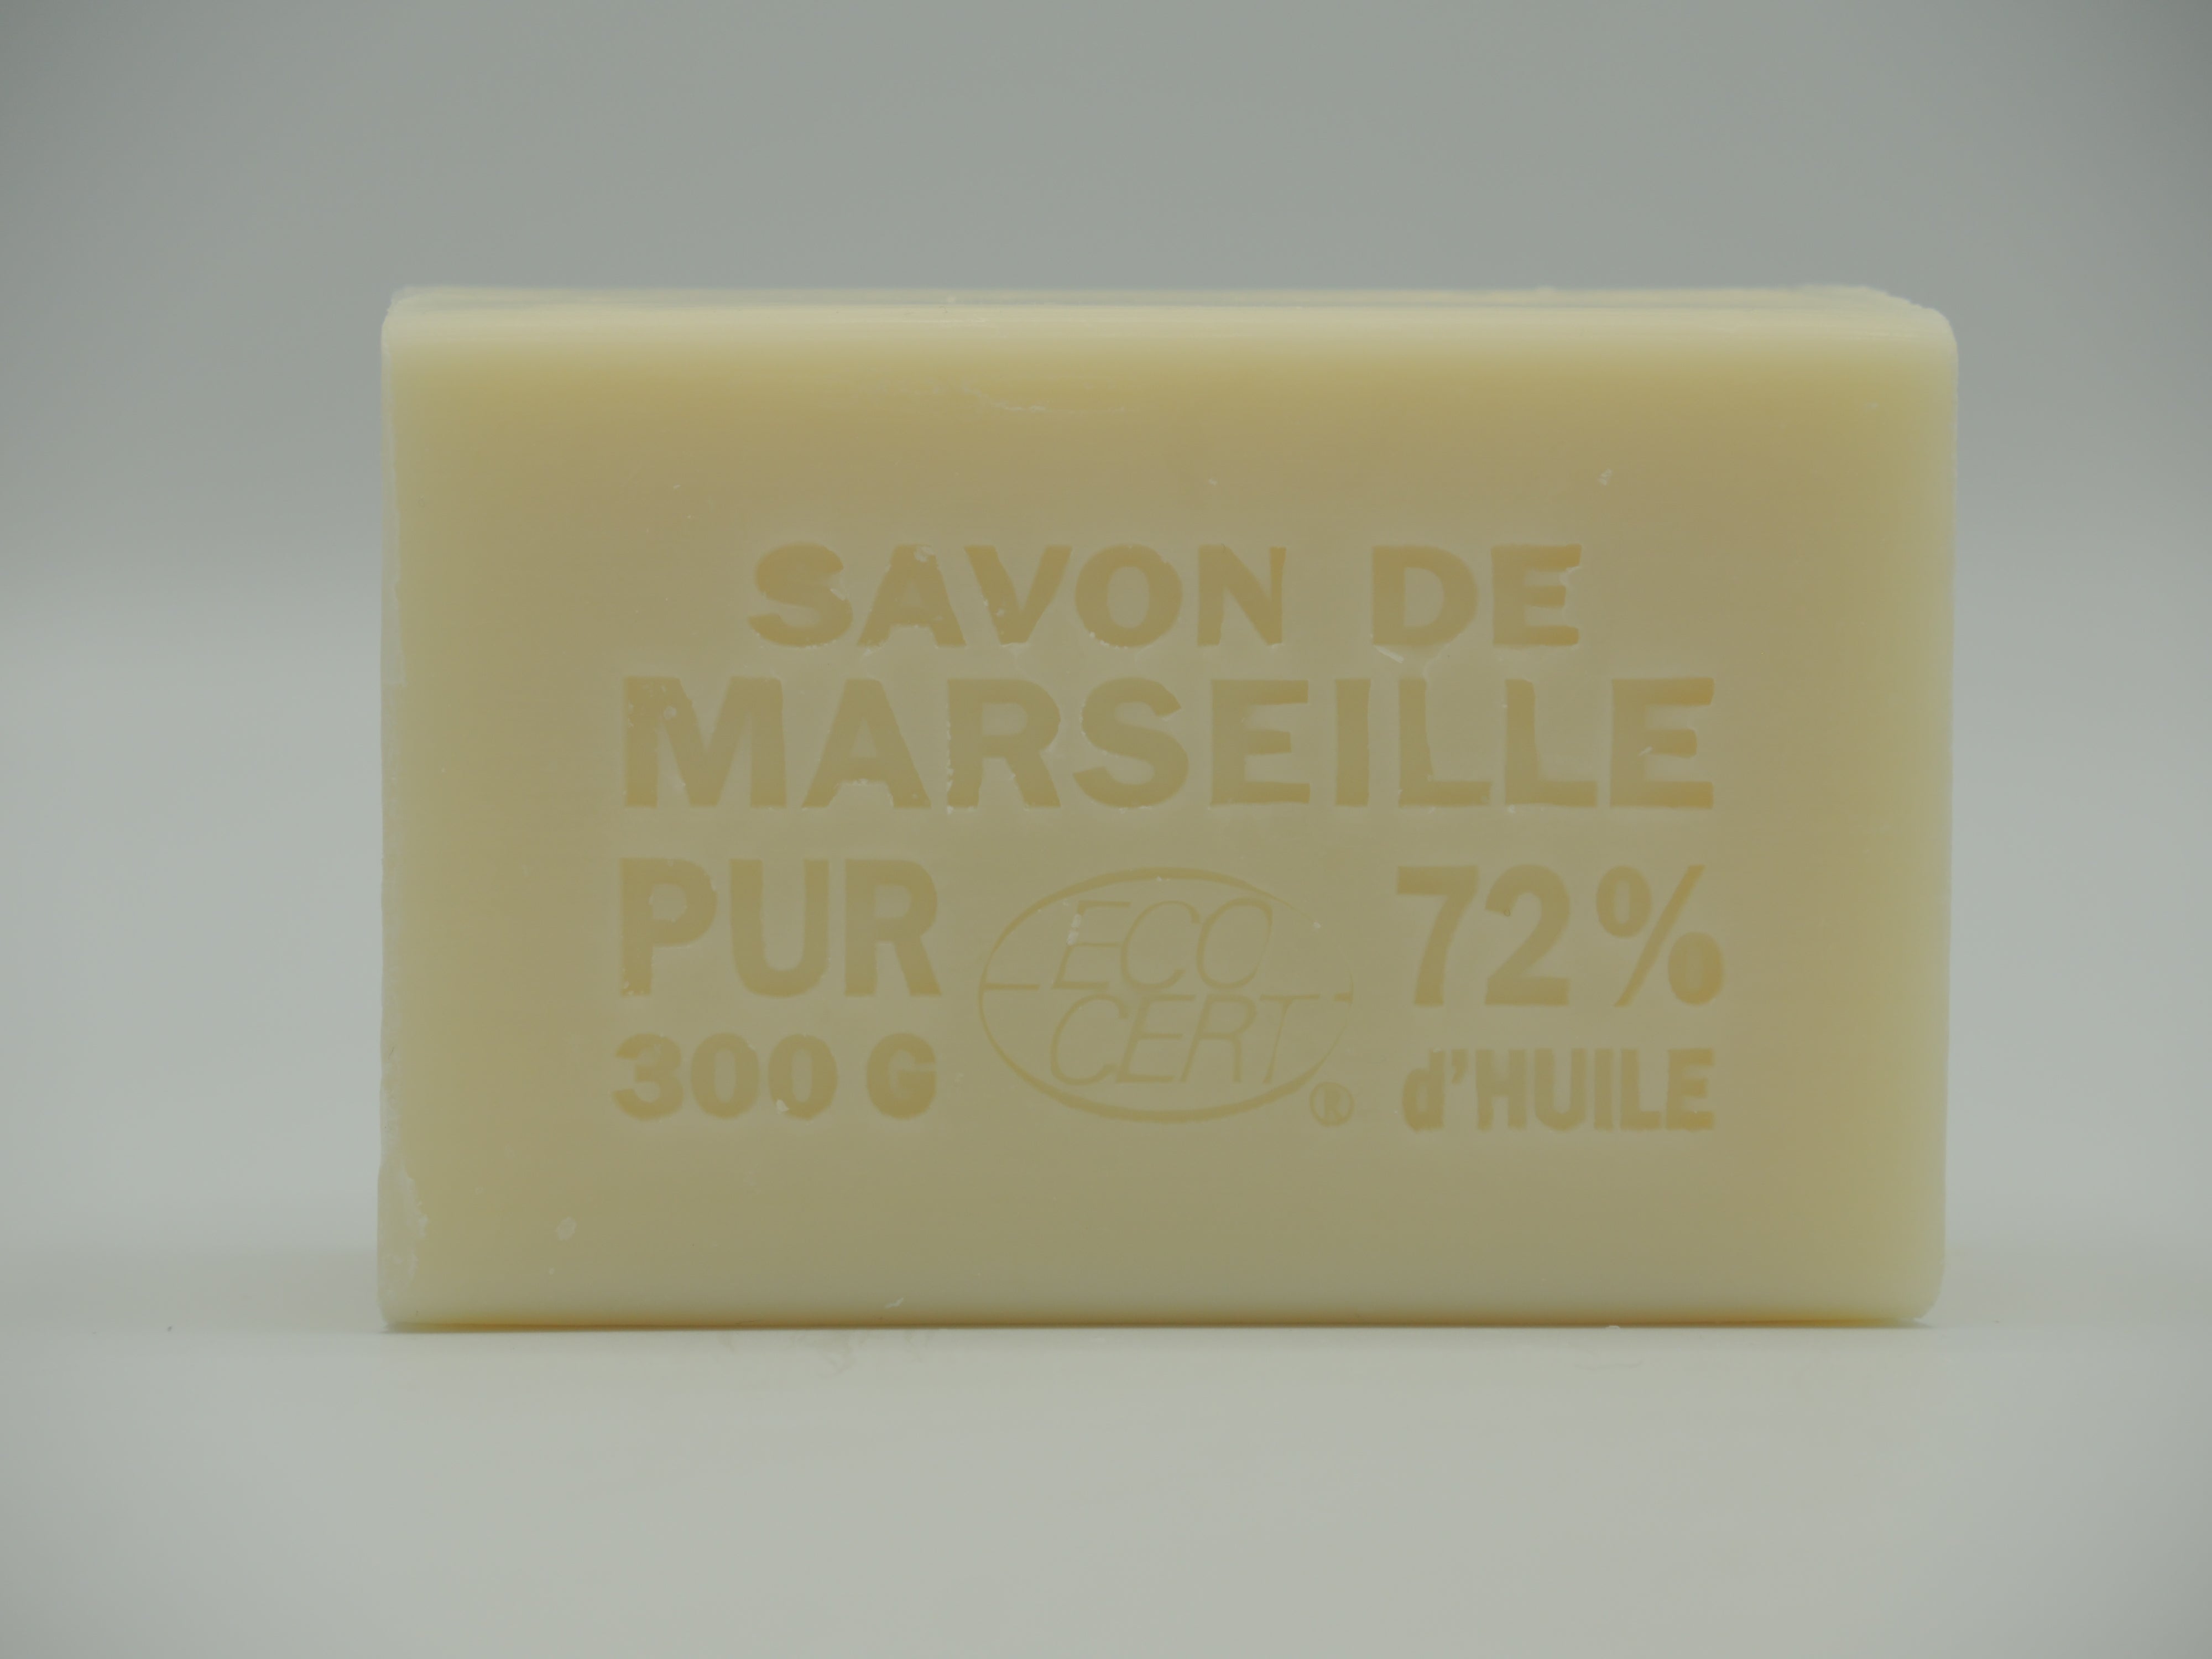 Savon de Marseille Authentique Rectangulaire 300g - Huile d'Olive -  Boutique Au savon de Marseille